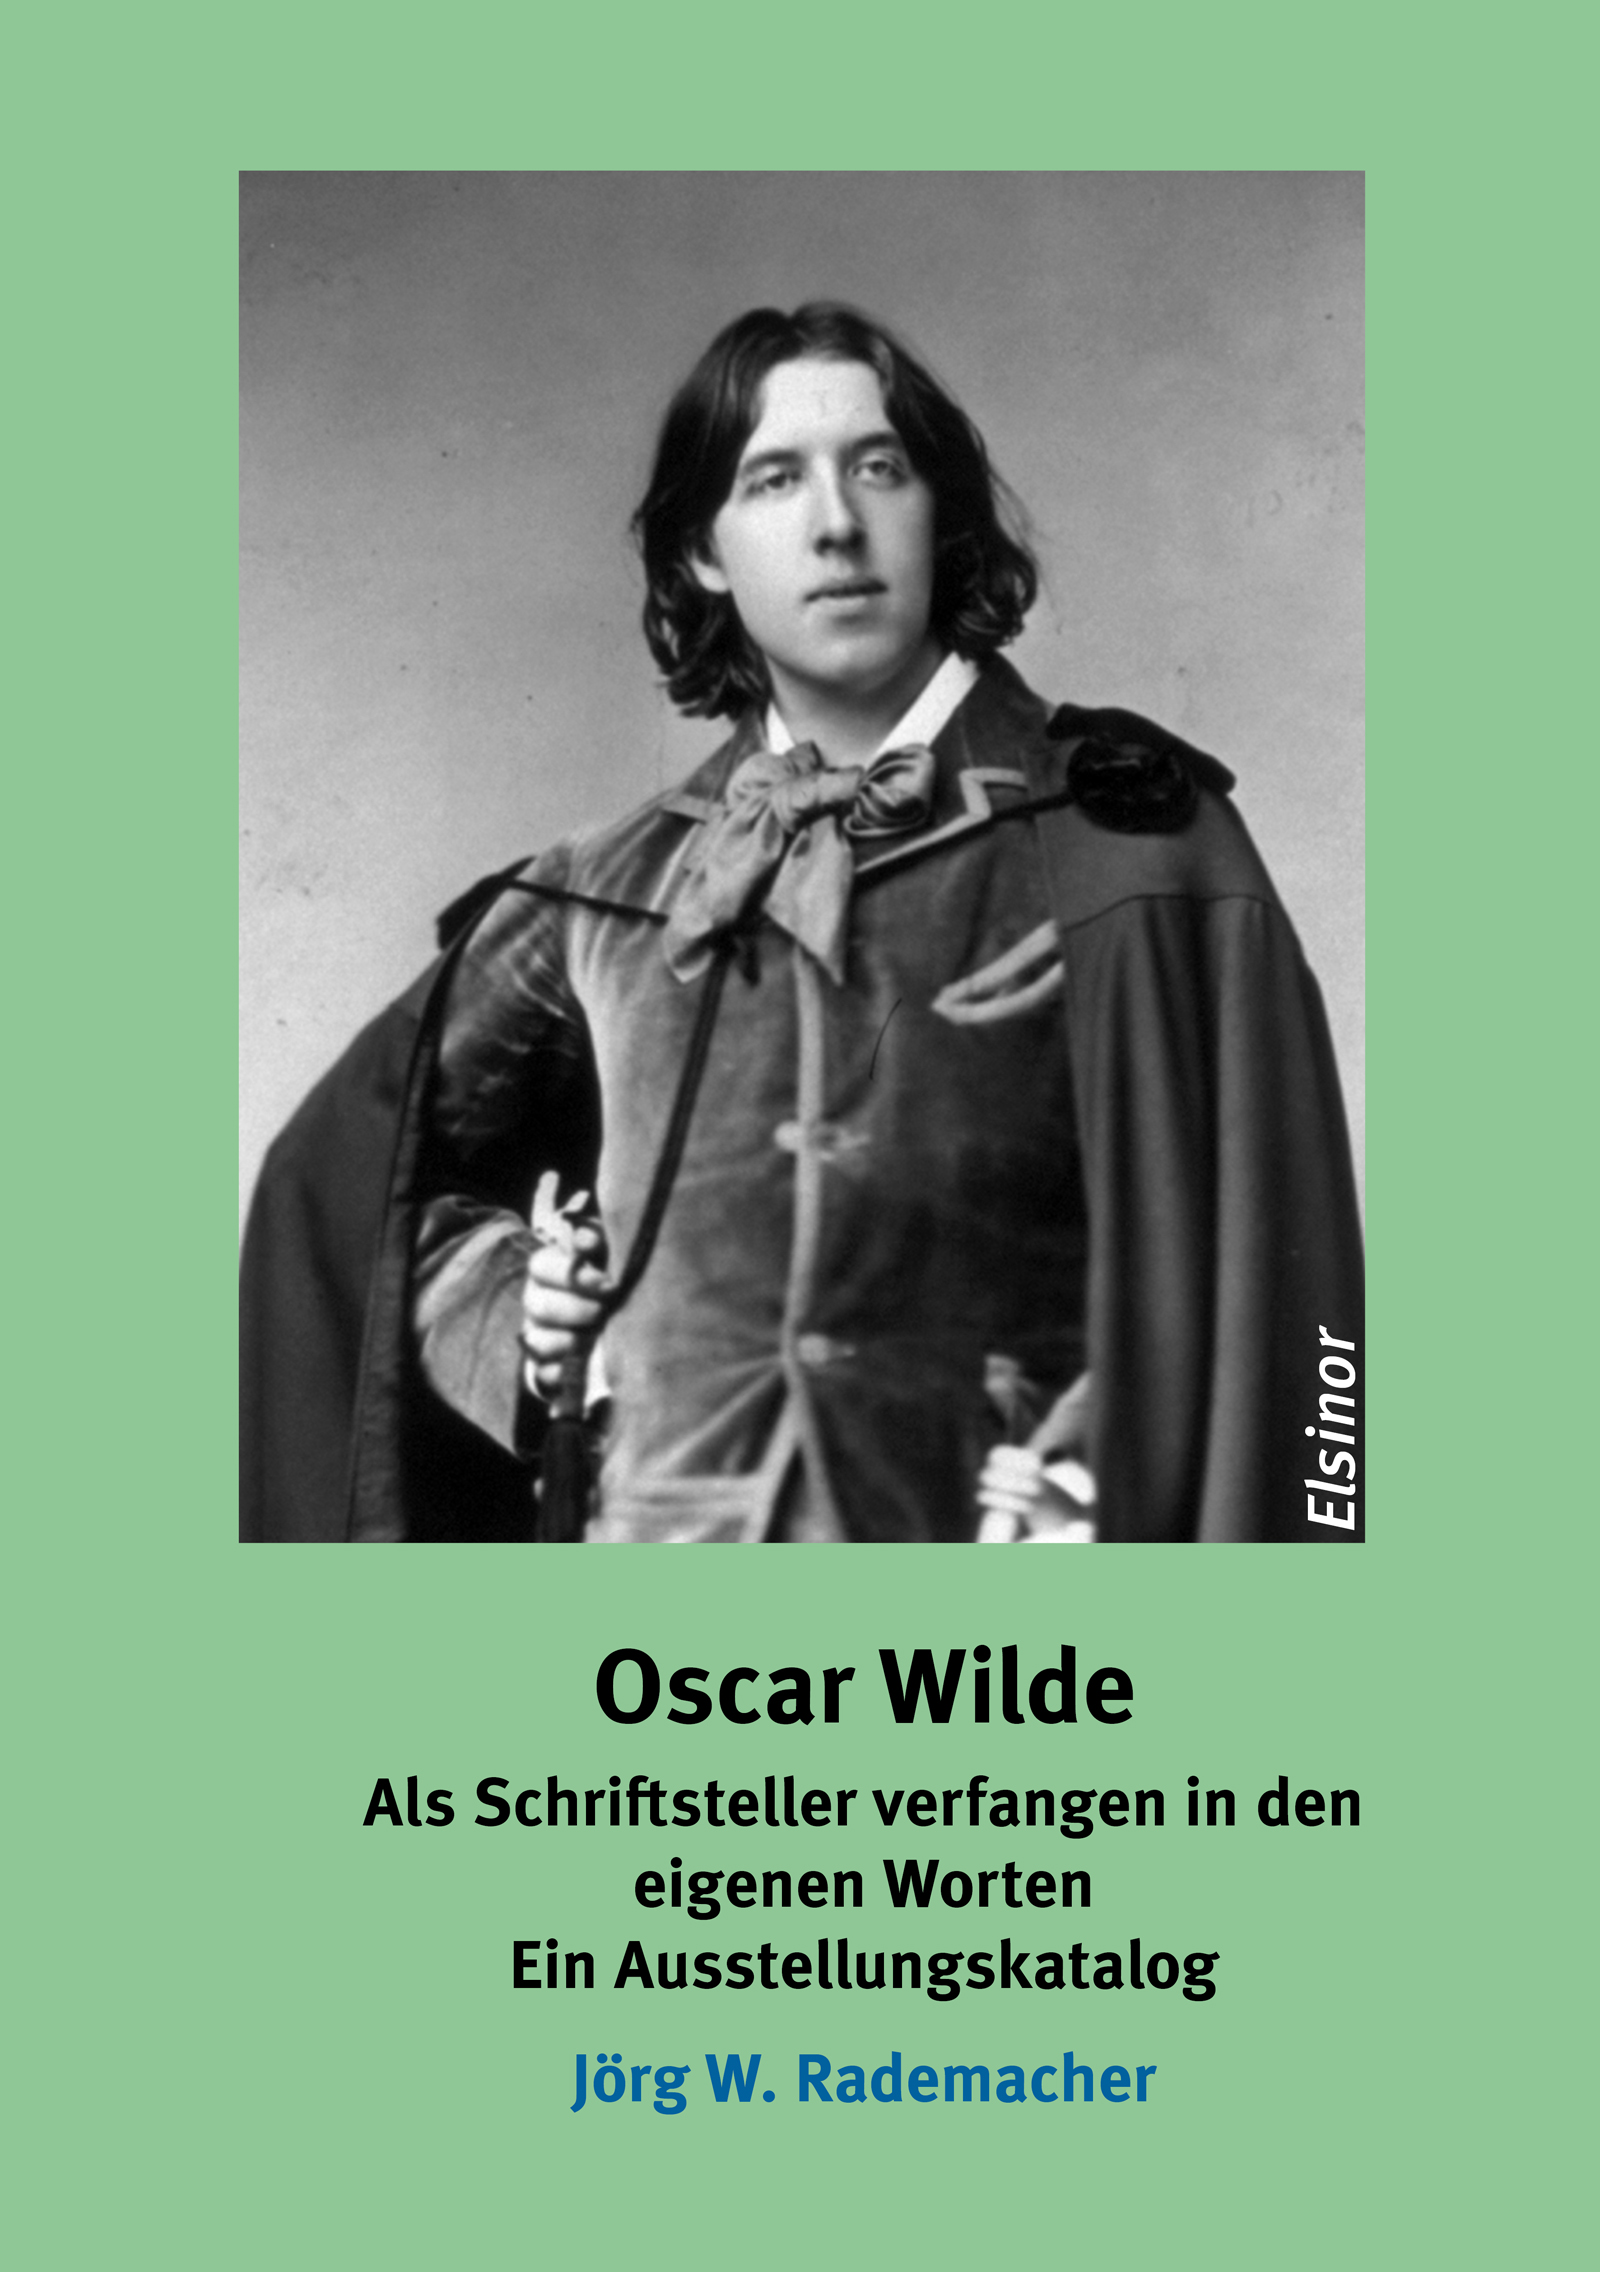 Oscar Wilde - Ein Ausstellungskatalog